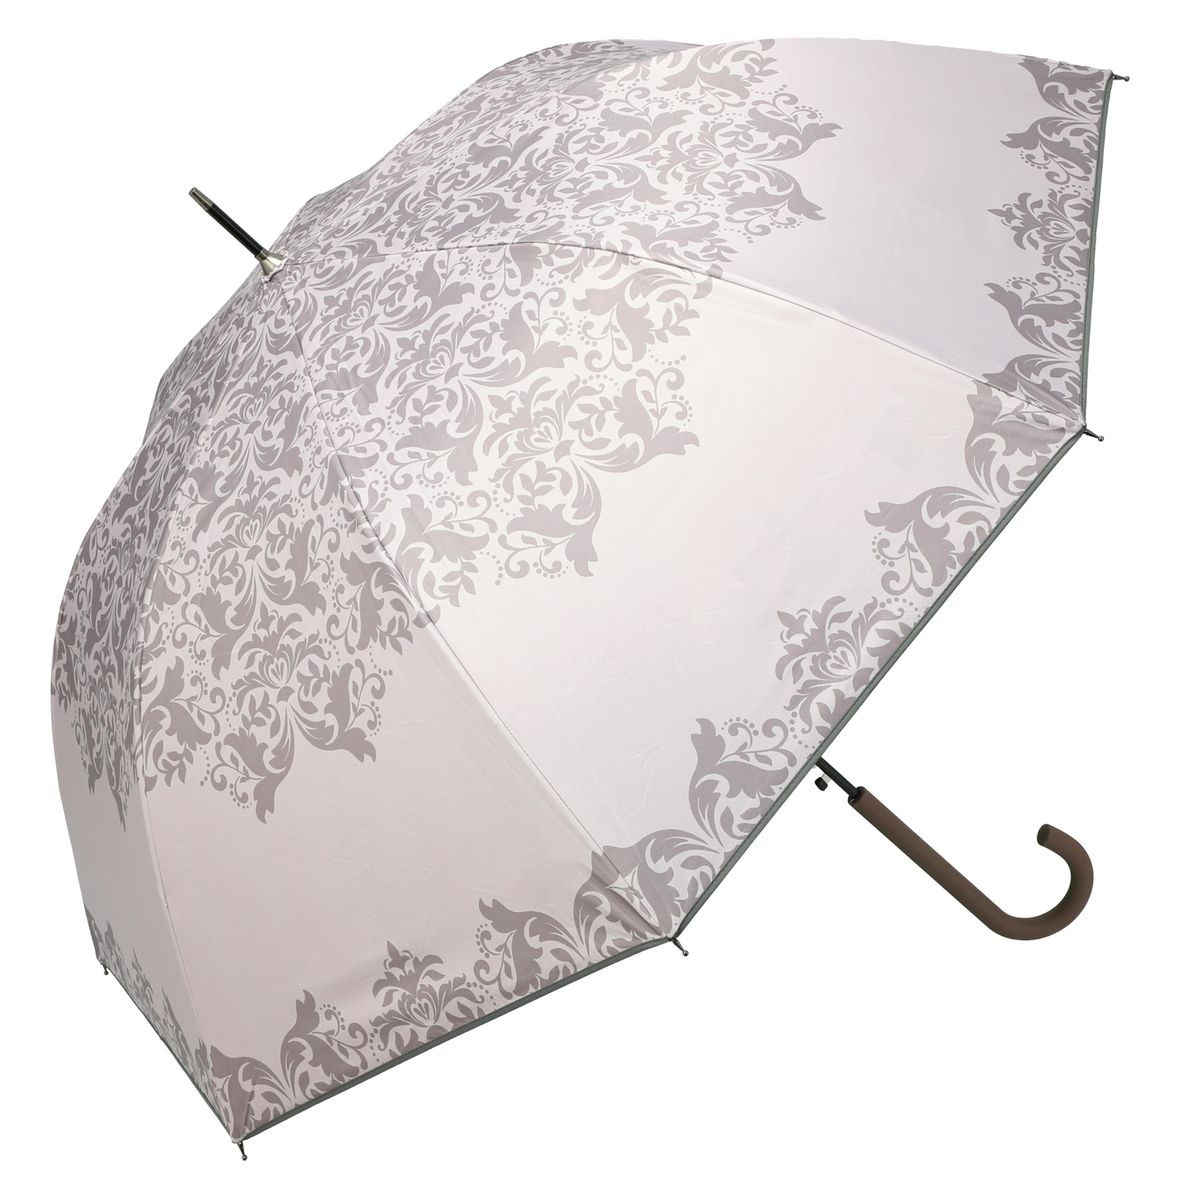  ルナジュメール UV+1級遮光+晴雨兼用 ダマスク柄長傘  ピンク